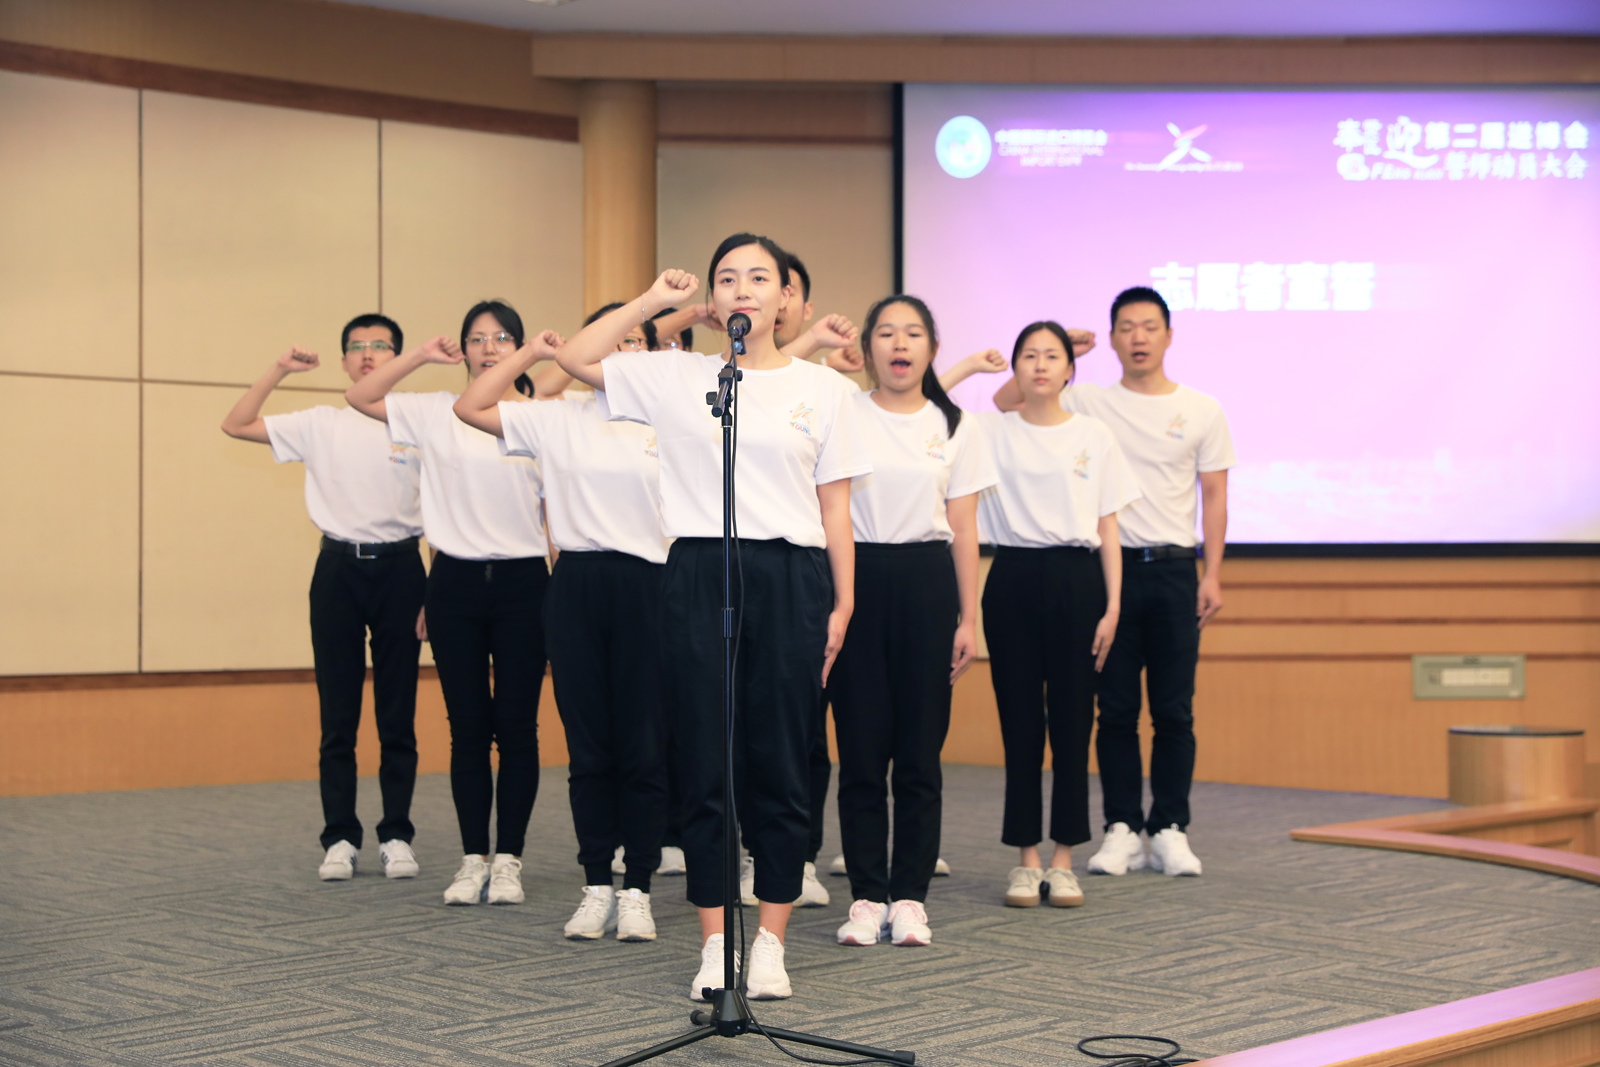 8月19日，上海奉贤区召开迎接第二届进博会誓师动员大会，正式吹响服务保障进博会的“集结号”。图为志愿